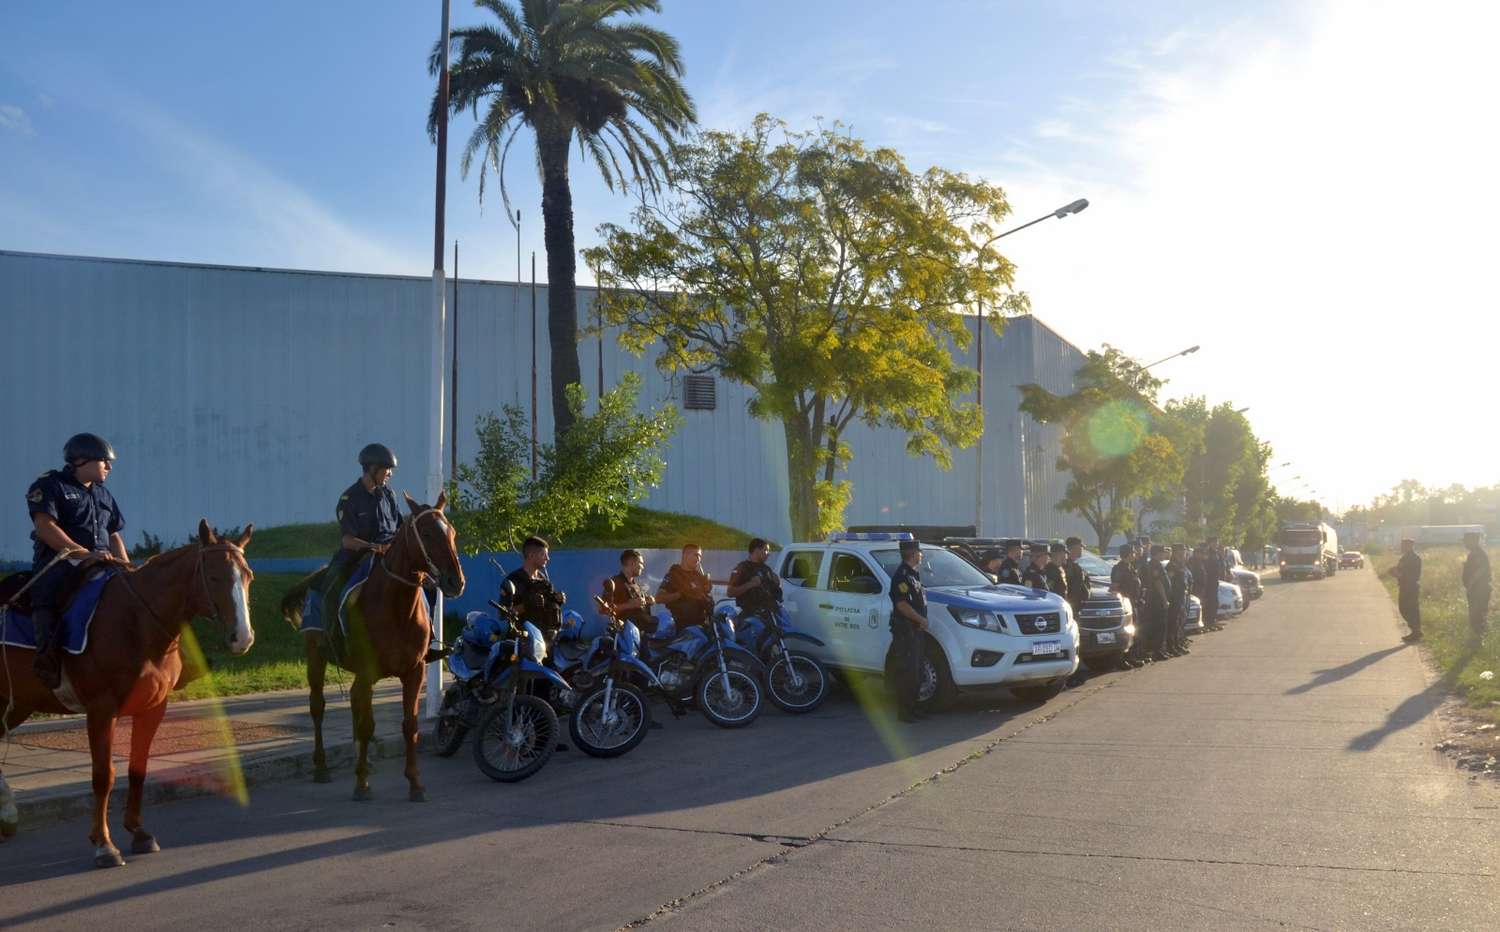 Más de 30 policías realizaron el operativo "Barrios seguros": ¿De qué se trata?